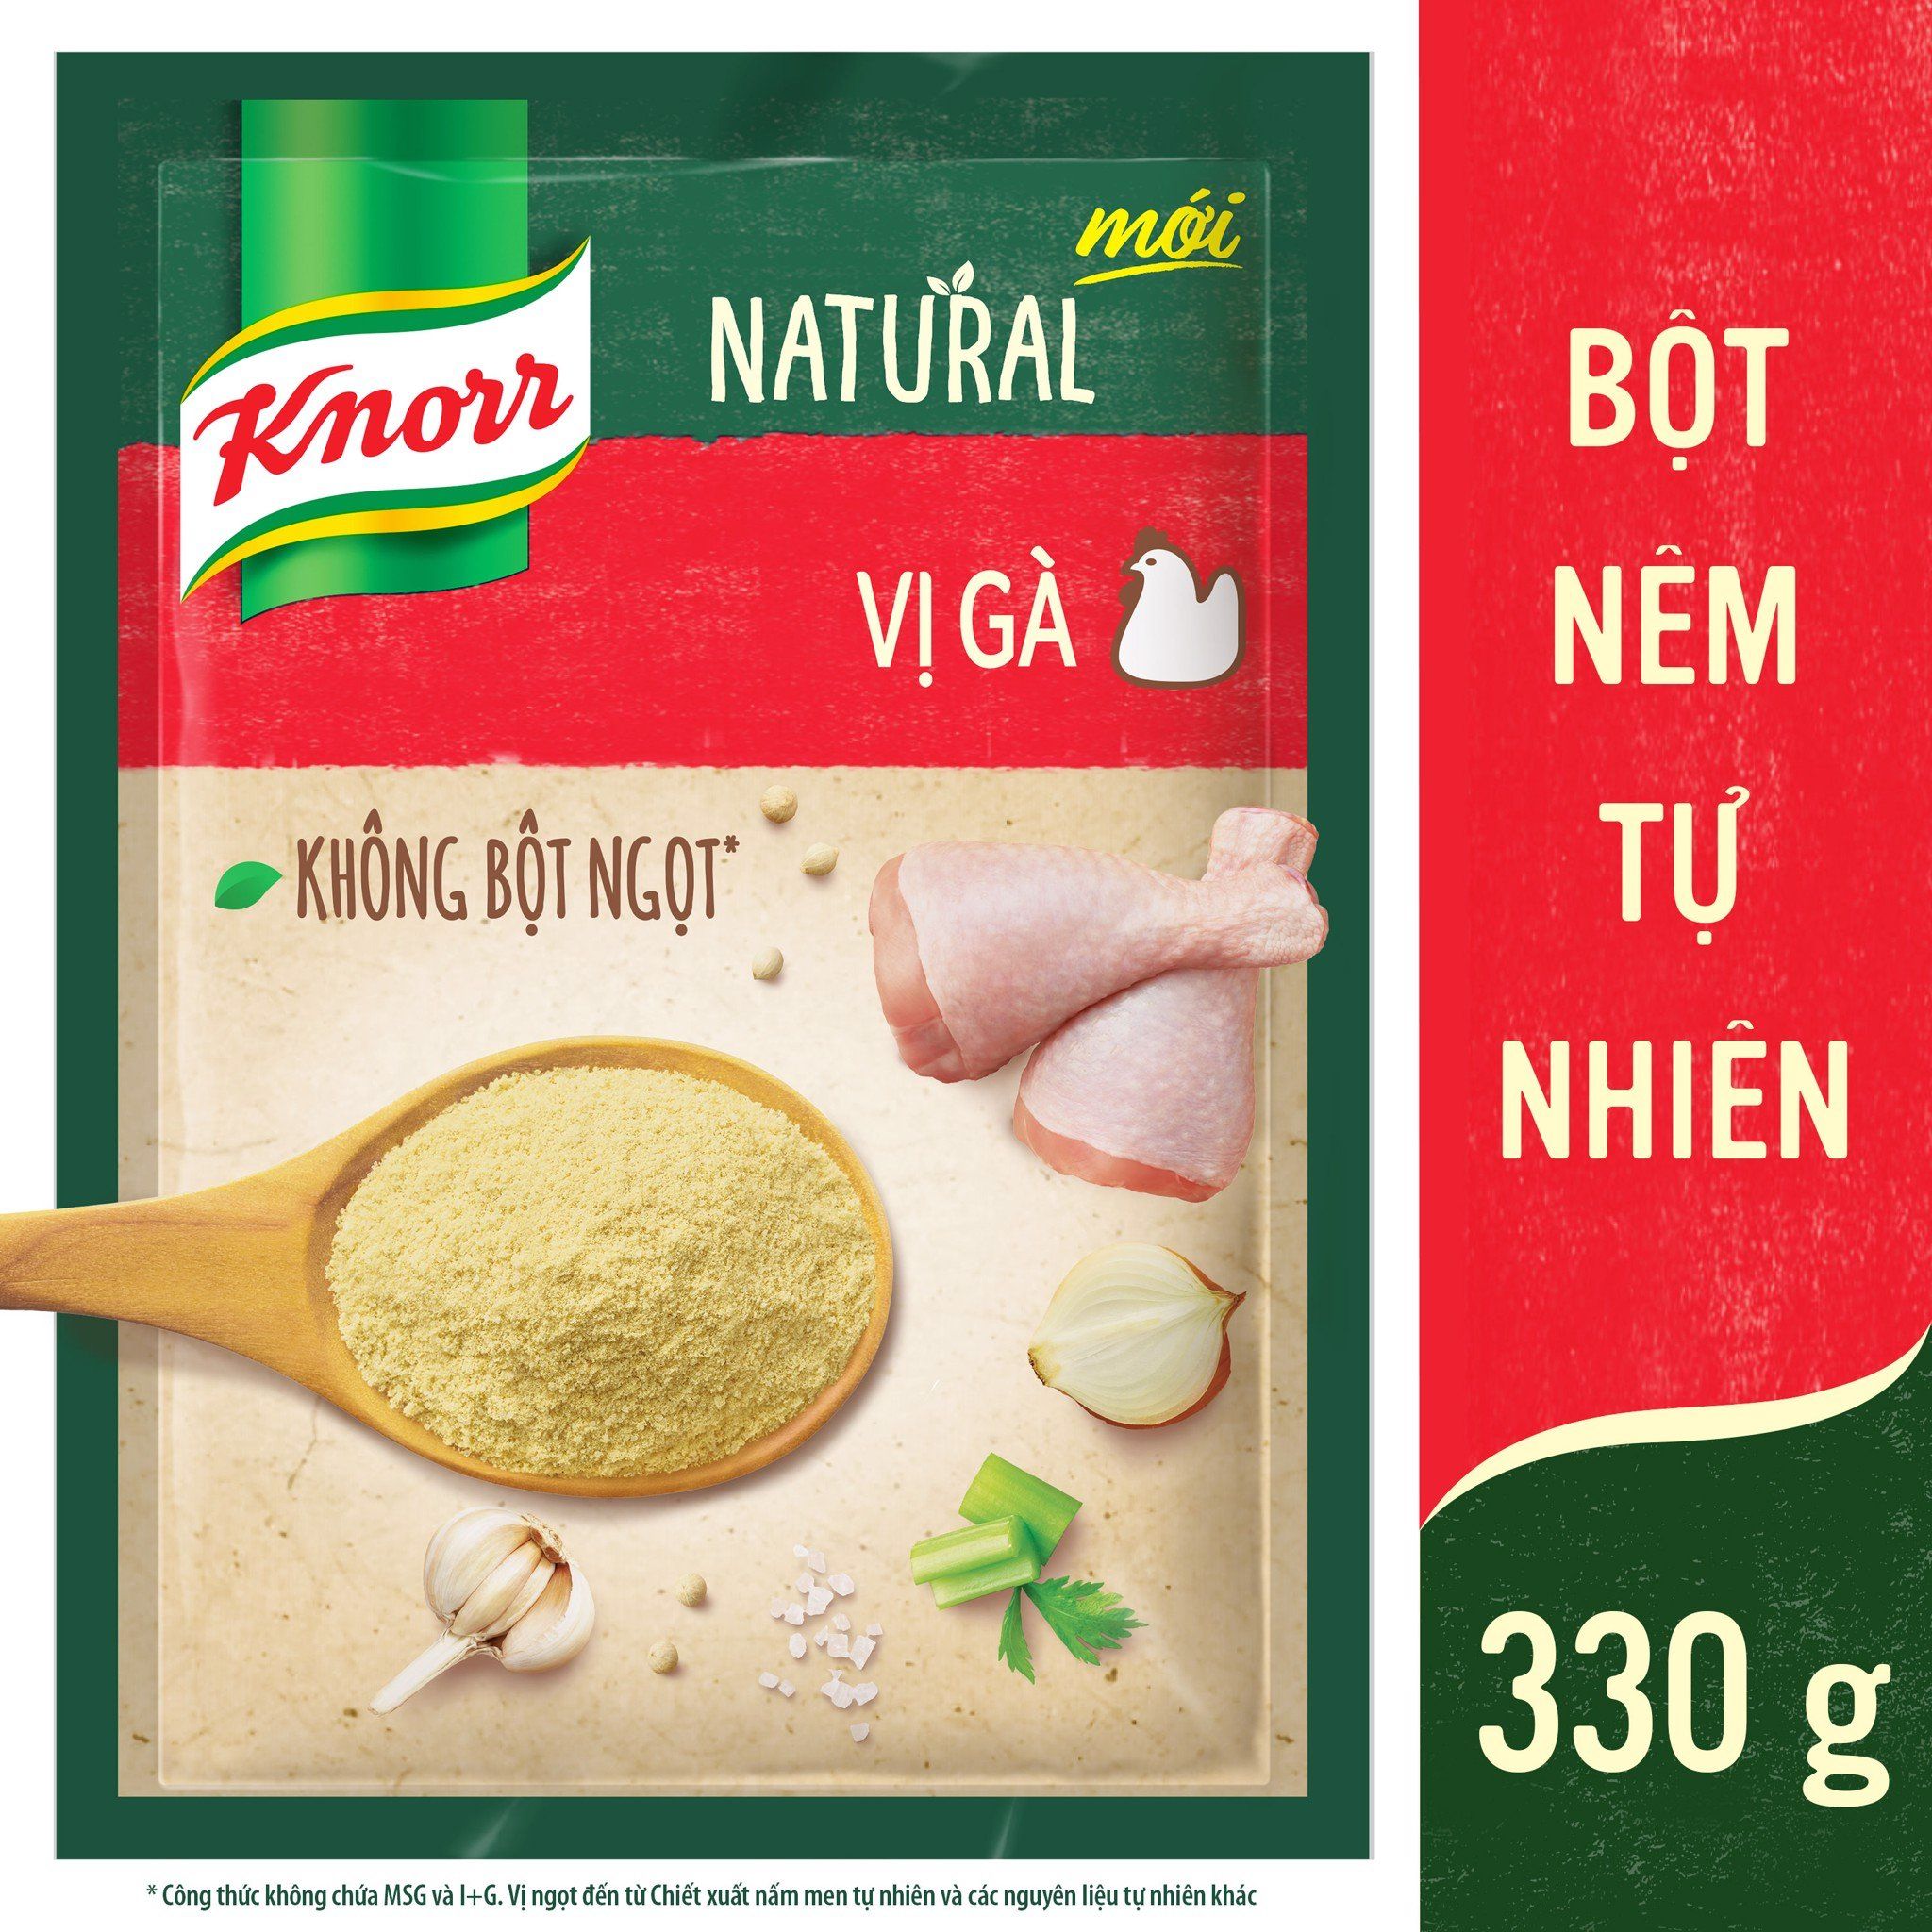  Combo 2 Knorr Natural Bột Nêm Tự Nhiên Vị Gà 330g / Gói 